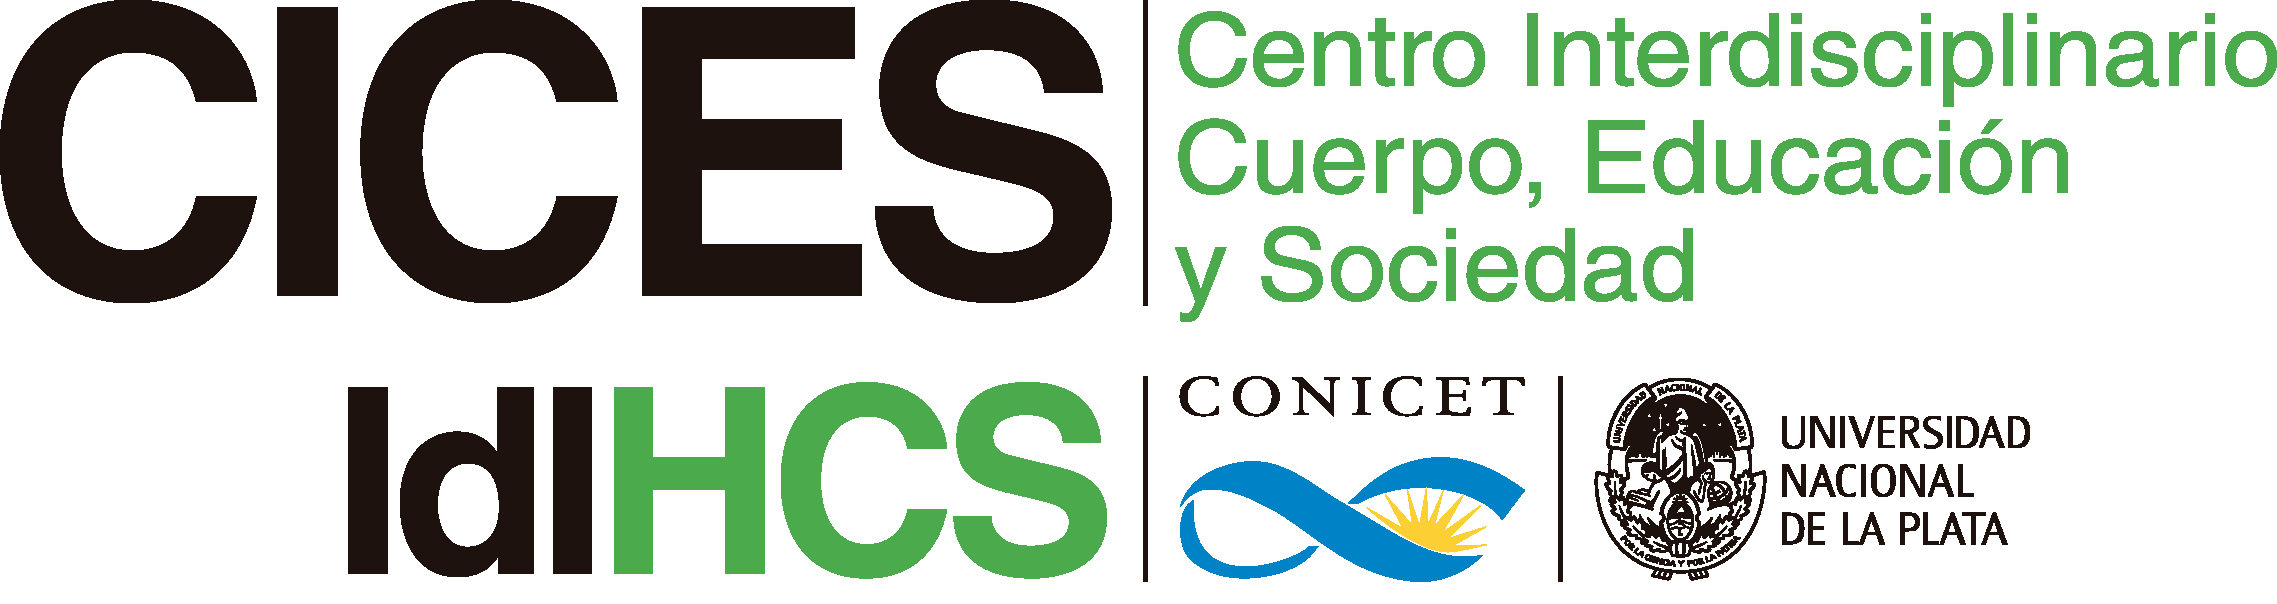 Centro Interdisciplinario Cuerpo, Educación y Sociedad